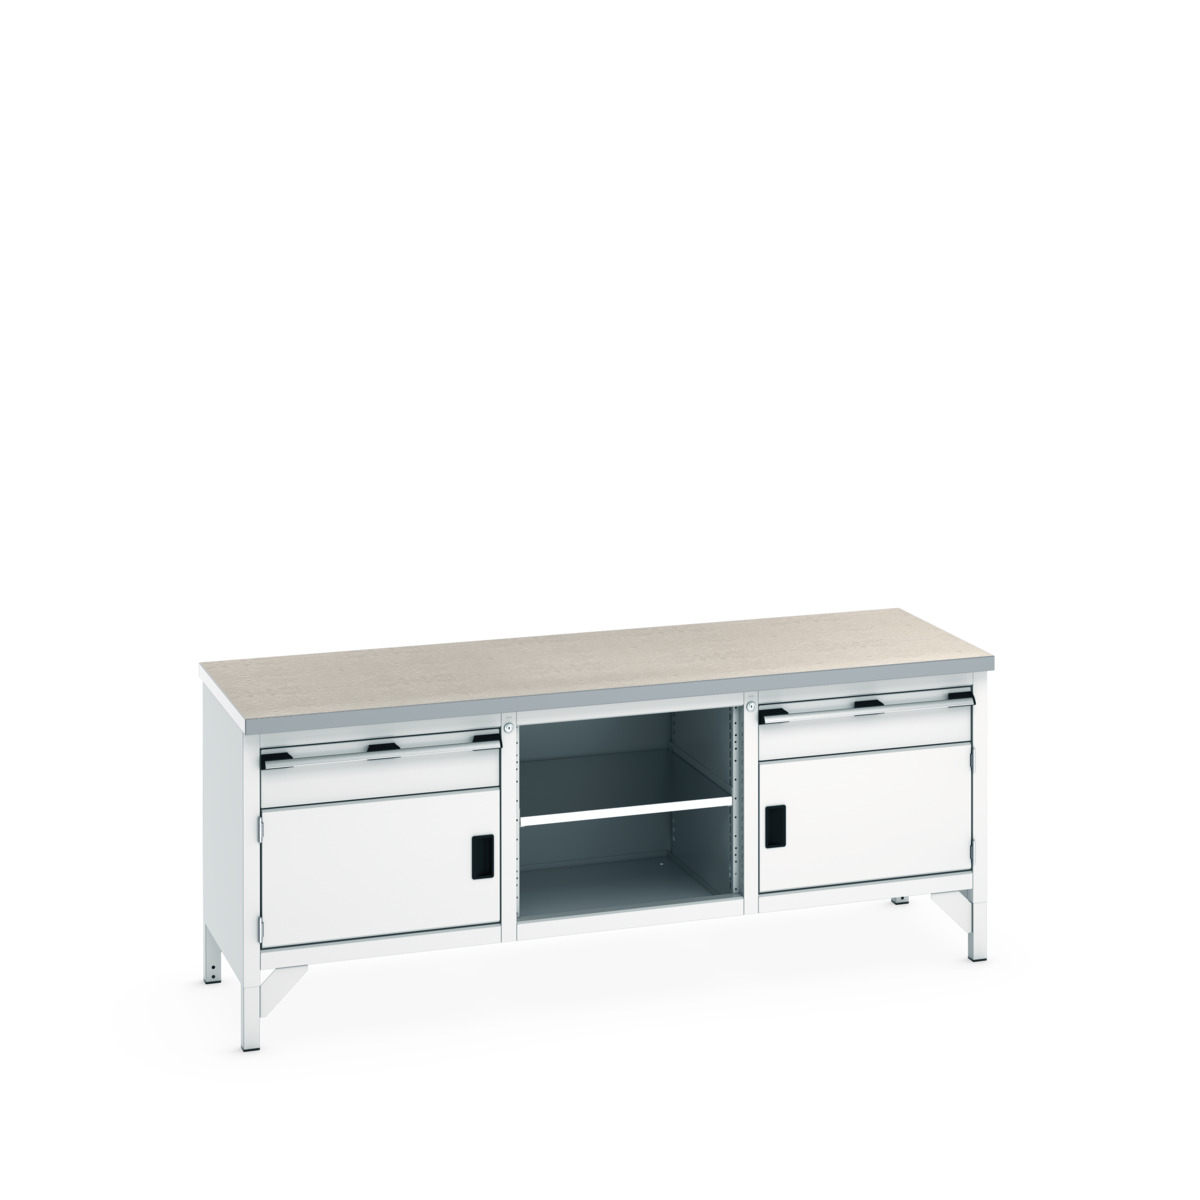 41002054.16V - cubio storage bench (lino)